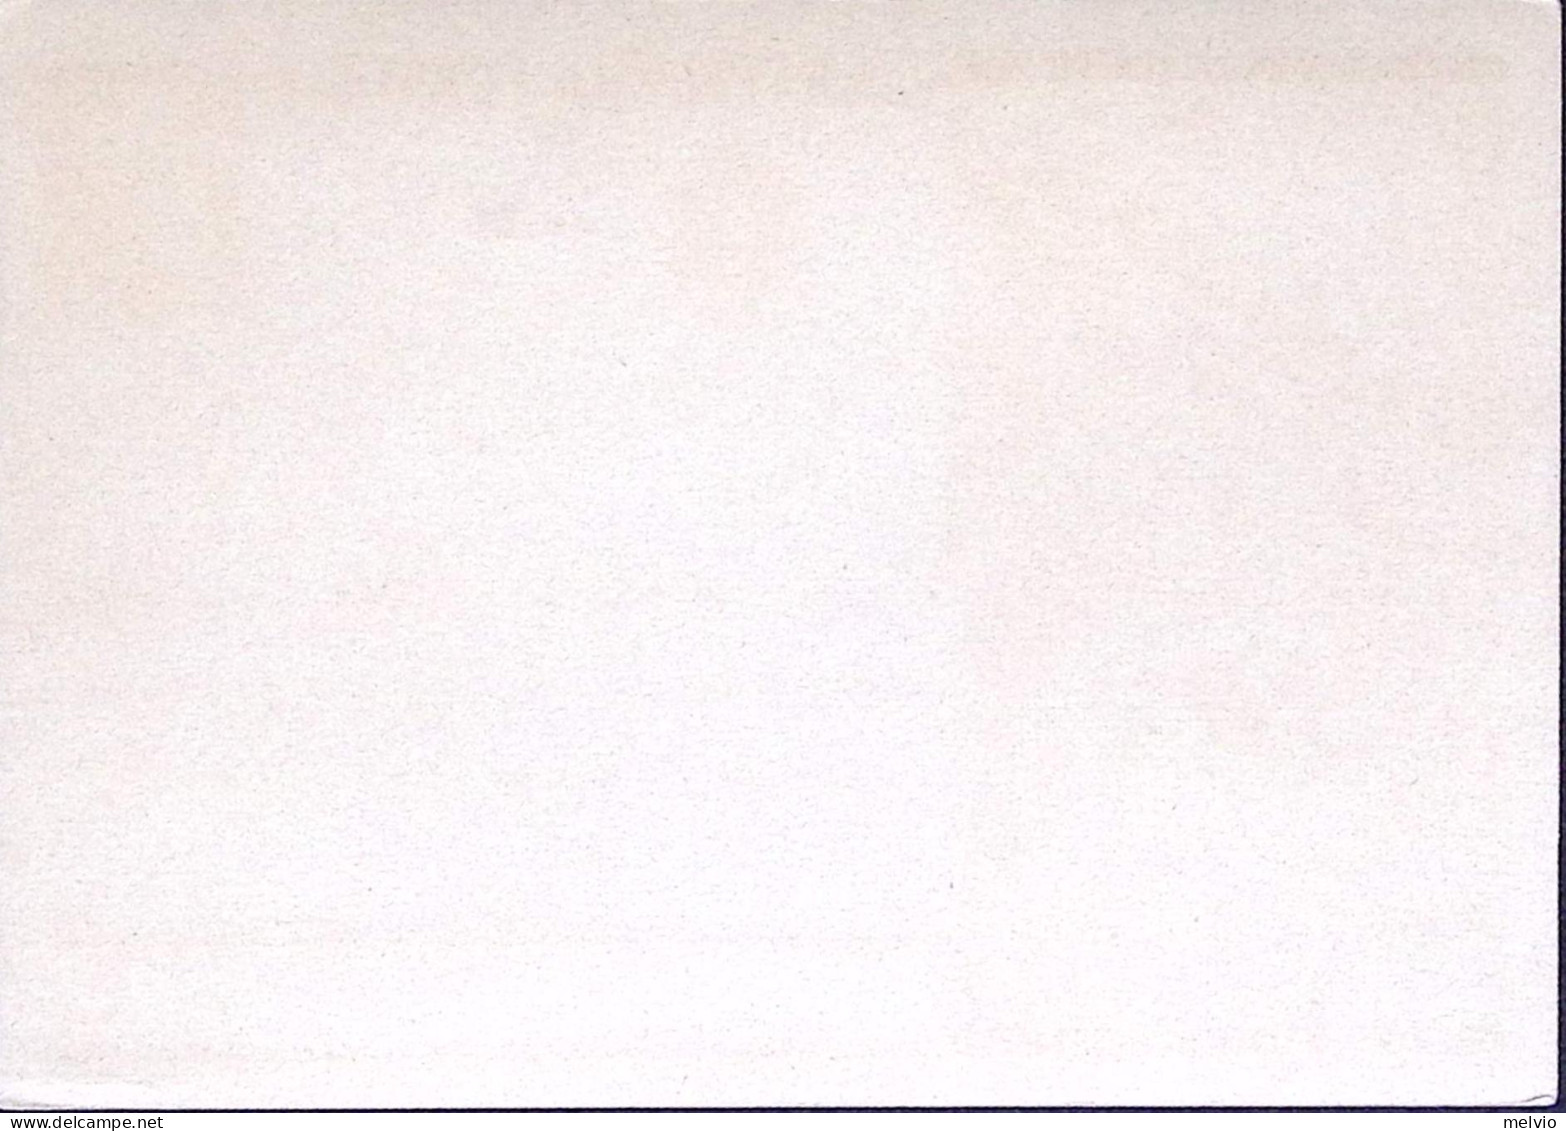 1931-Cartolina Postale Opere Regime C.30 Istituto Anatomia Umana Nuova - Stamped Stationery